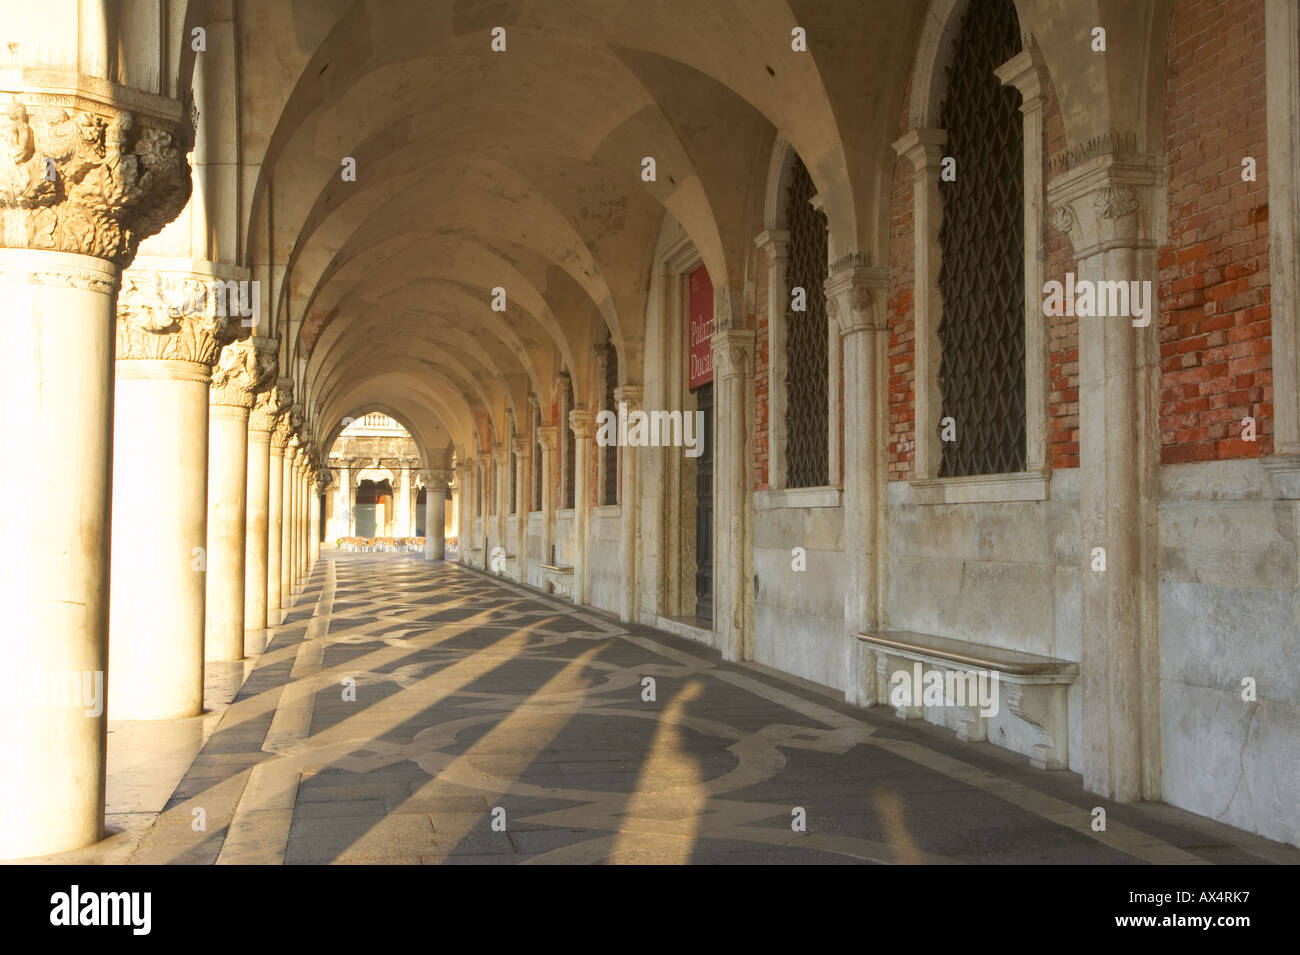 Collonade of the Palazzo Ducale Venice Stock Photo